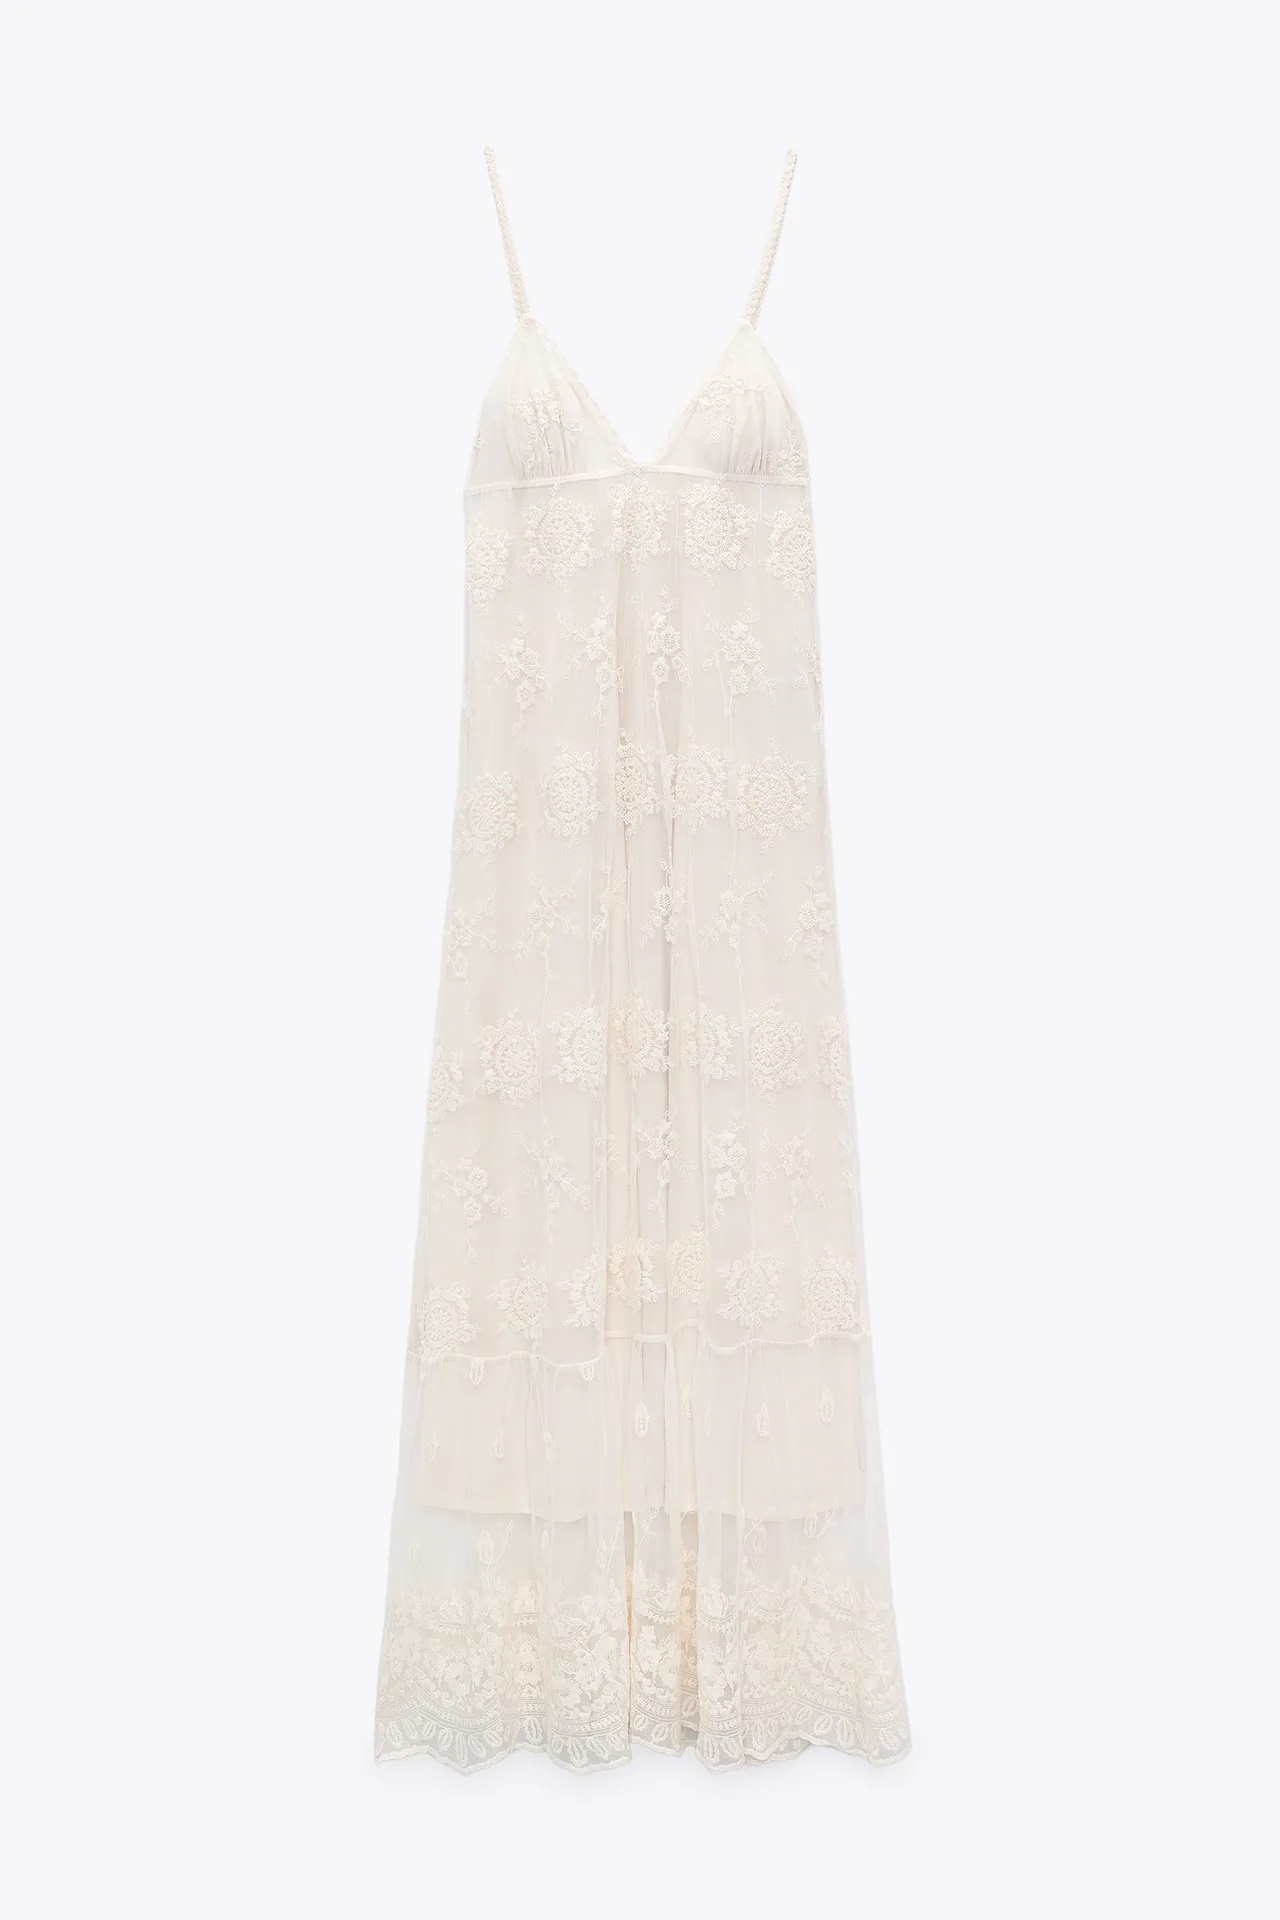 Tus sueños se harán realidad con el vestido de novia boho de Zara de 29’95 euros